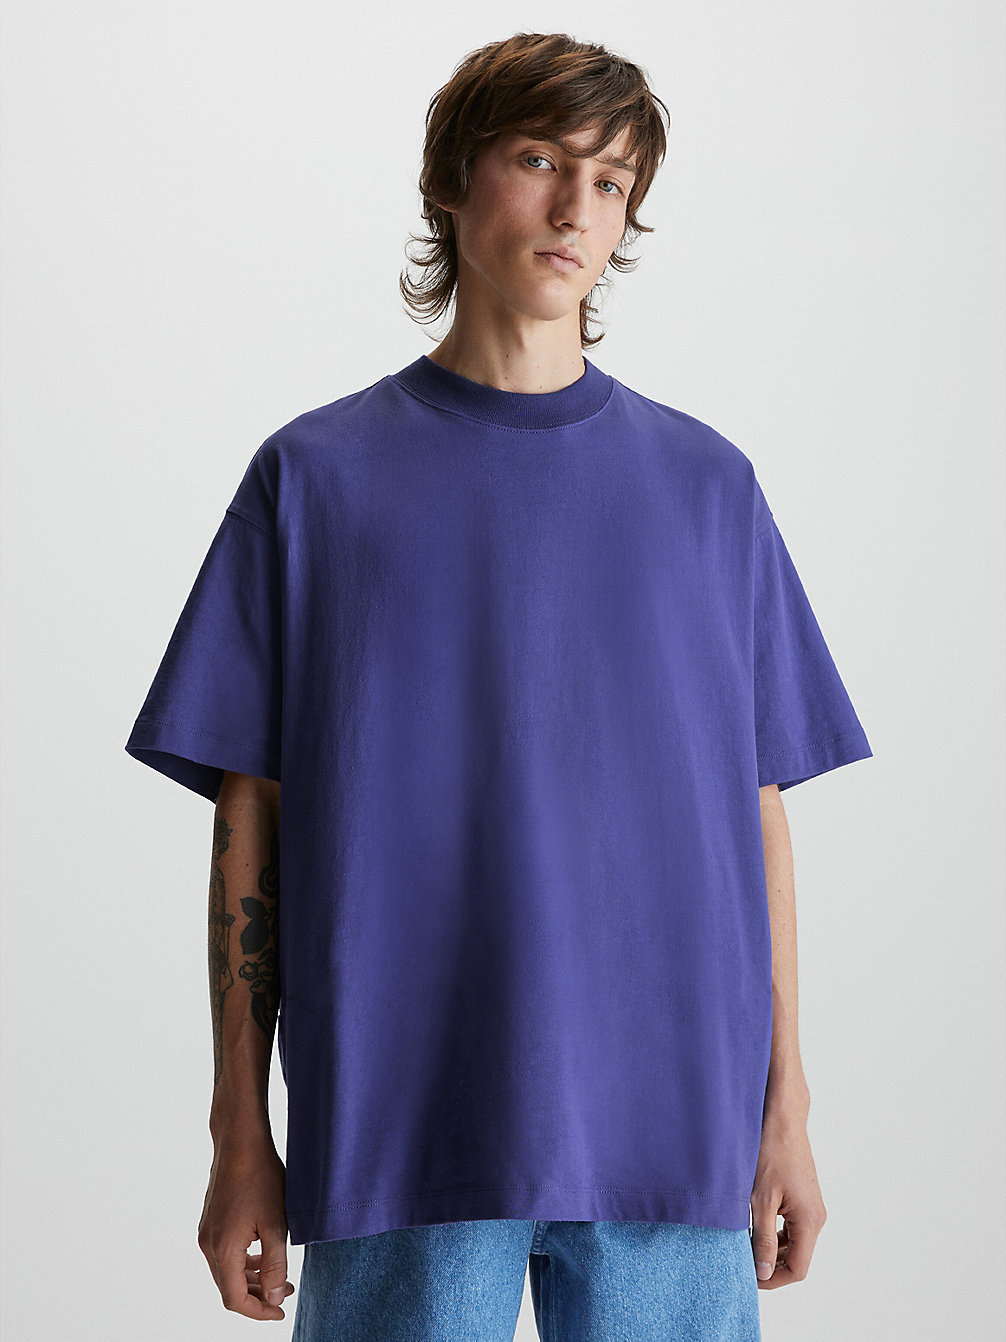 ORIENT BLUE > Габаритная футболка унисекс > undefined unisex - Calvin Klein